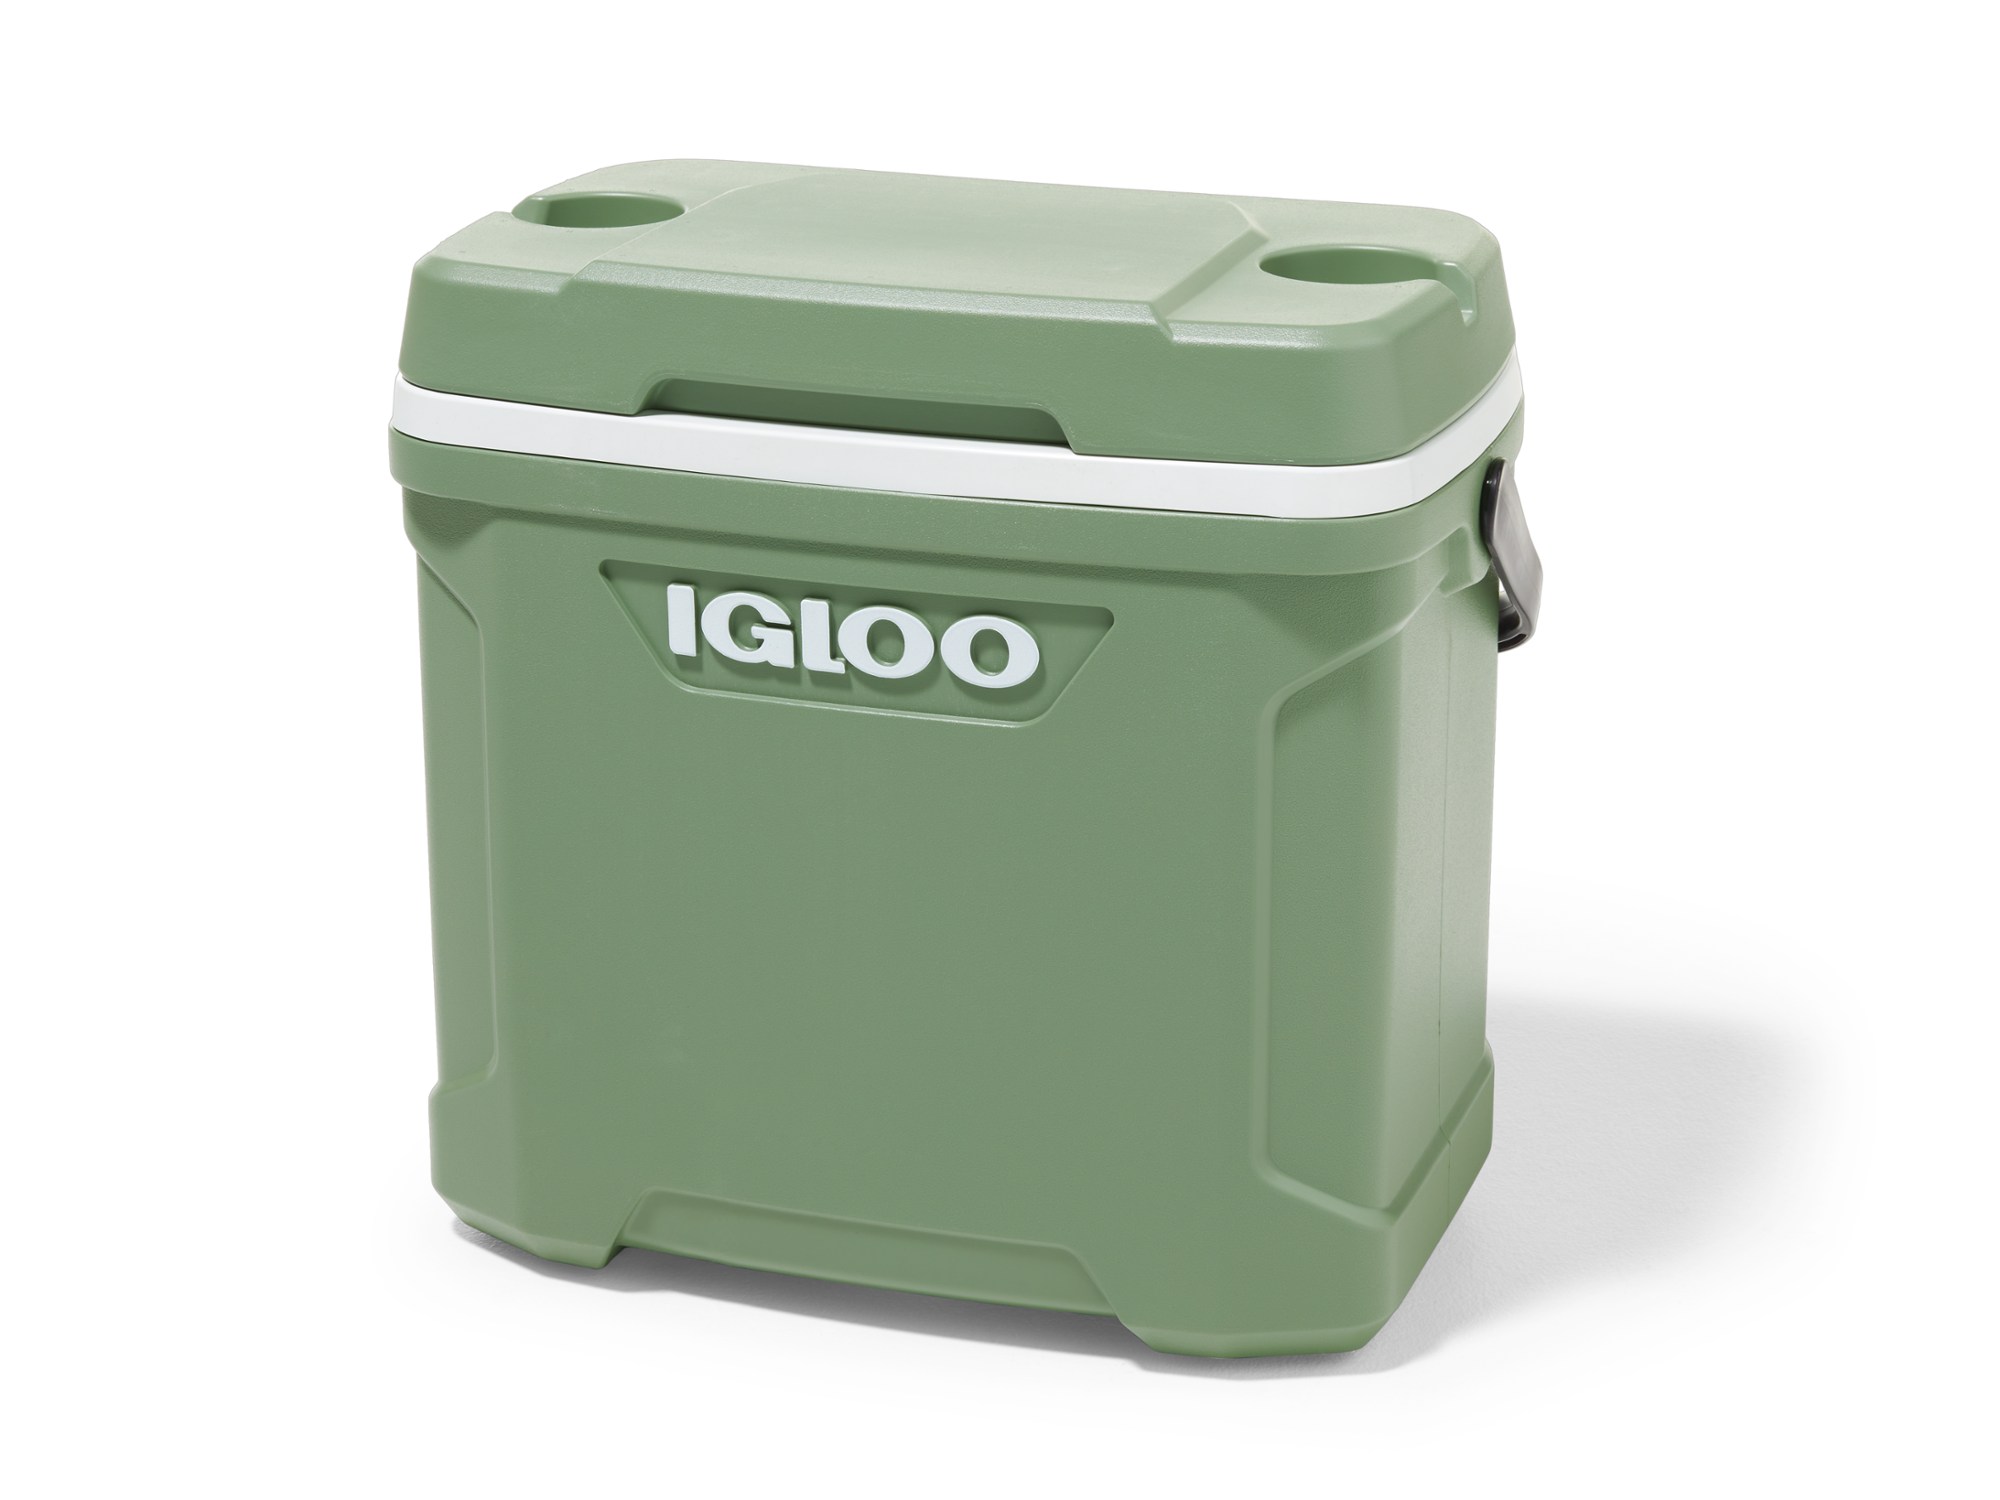 Холодильник ECOCOOL 30 — 30 литров Igloo, зеленый